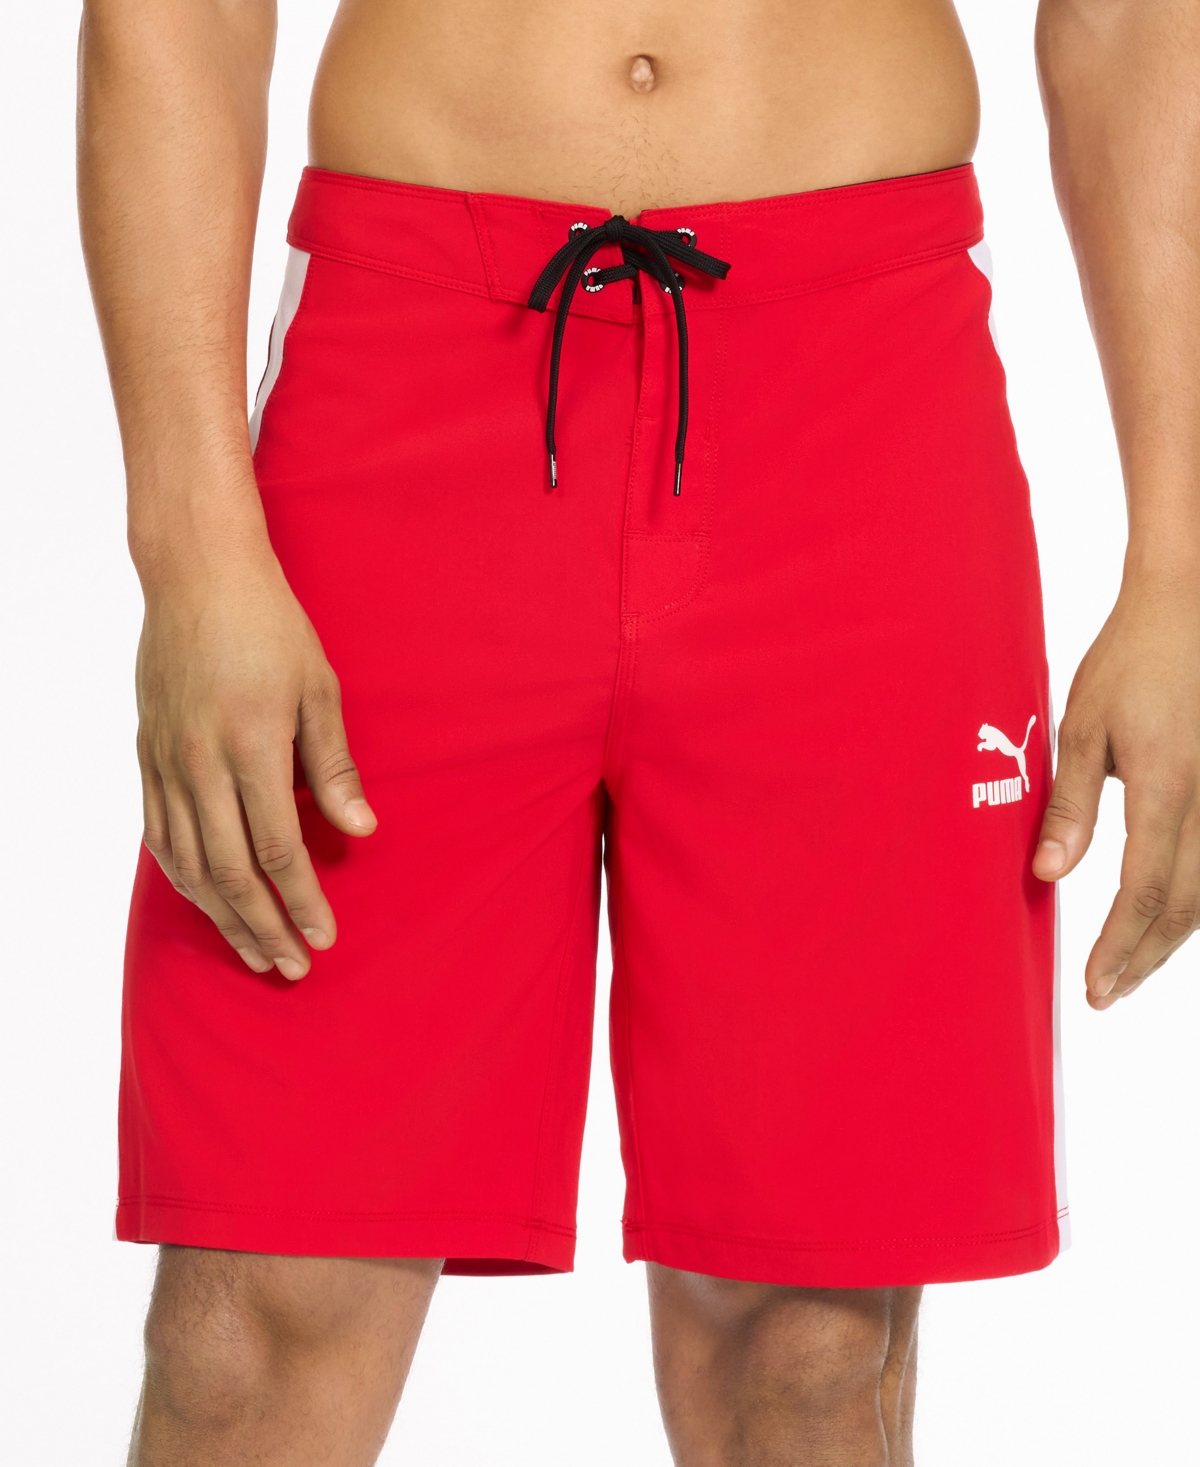 Men's T7 Colorblocked 9" Board Shorts - Medium Red